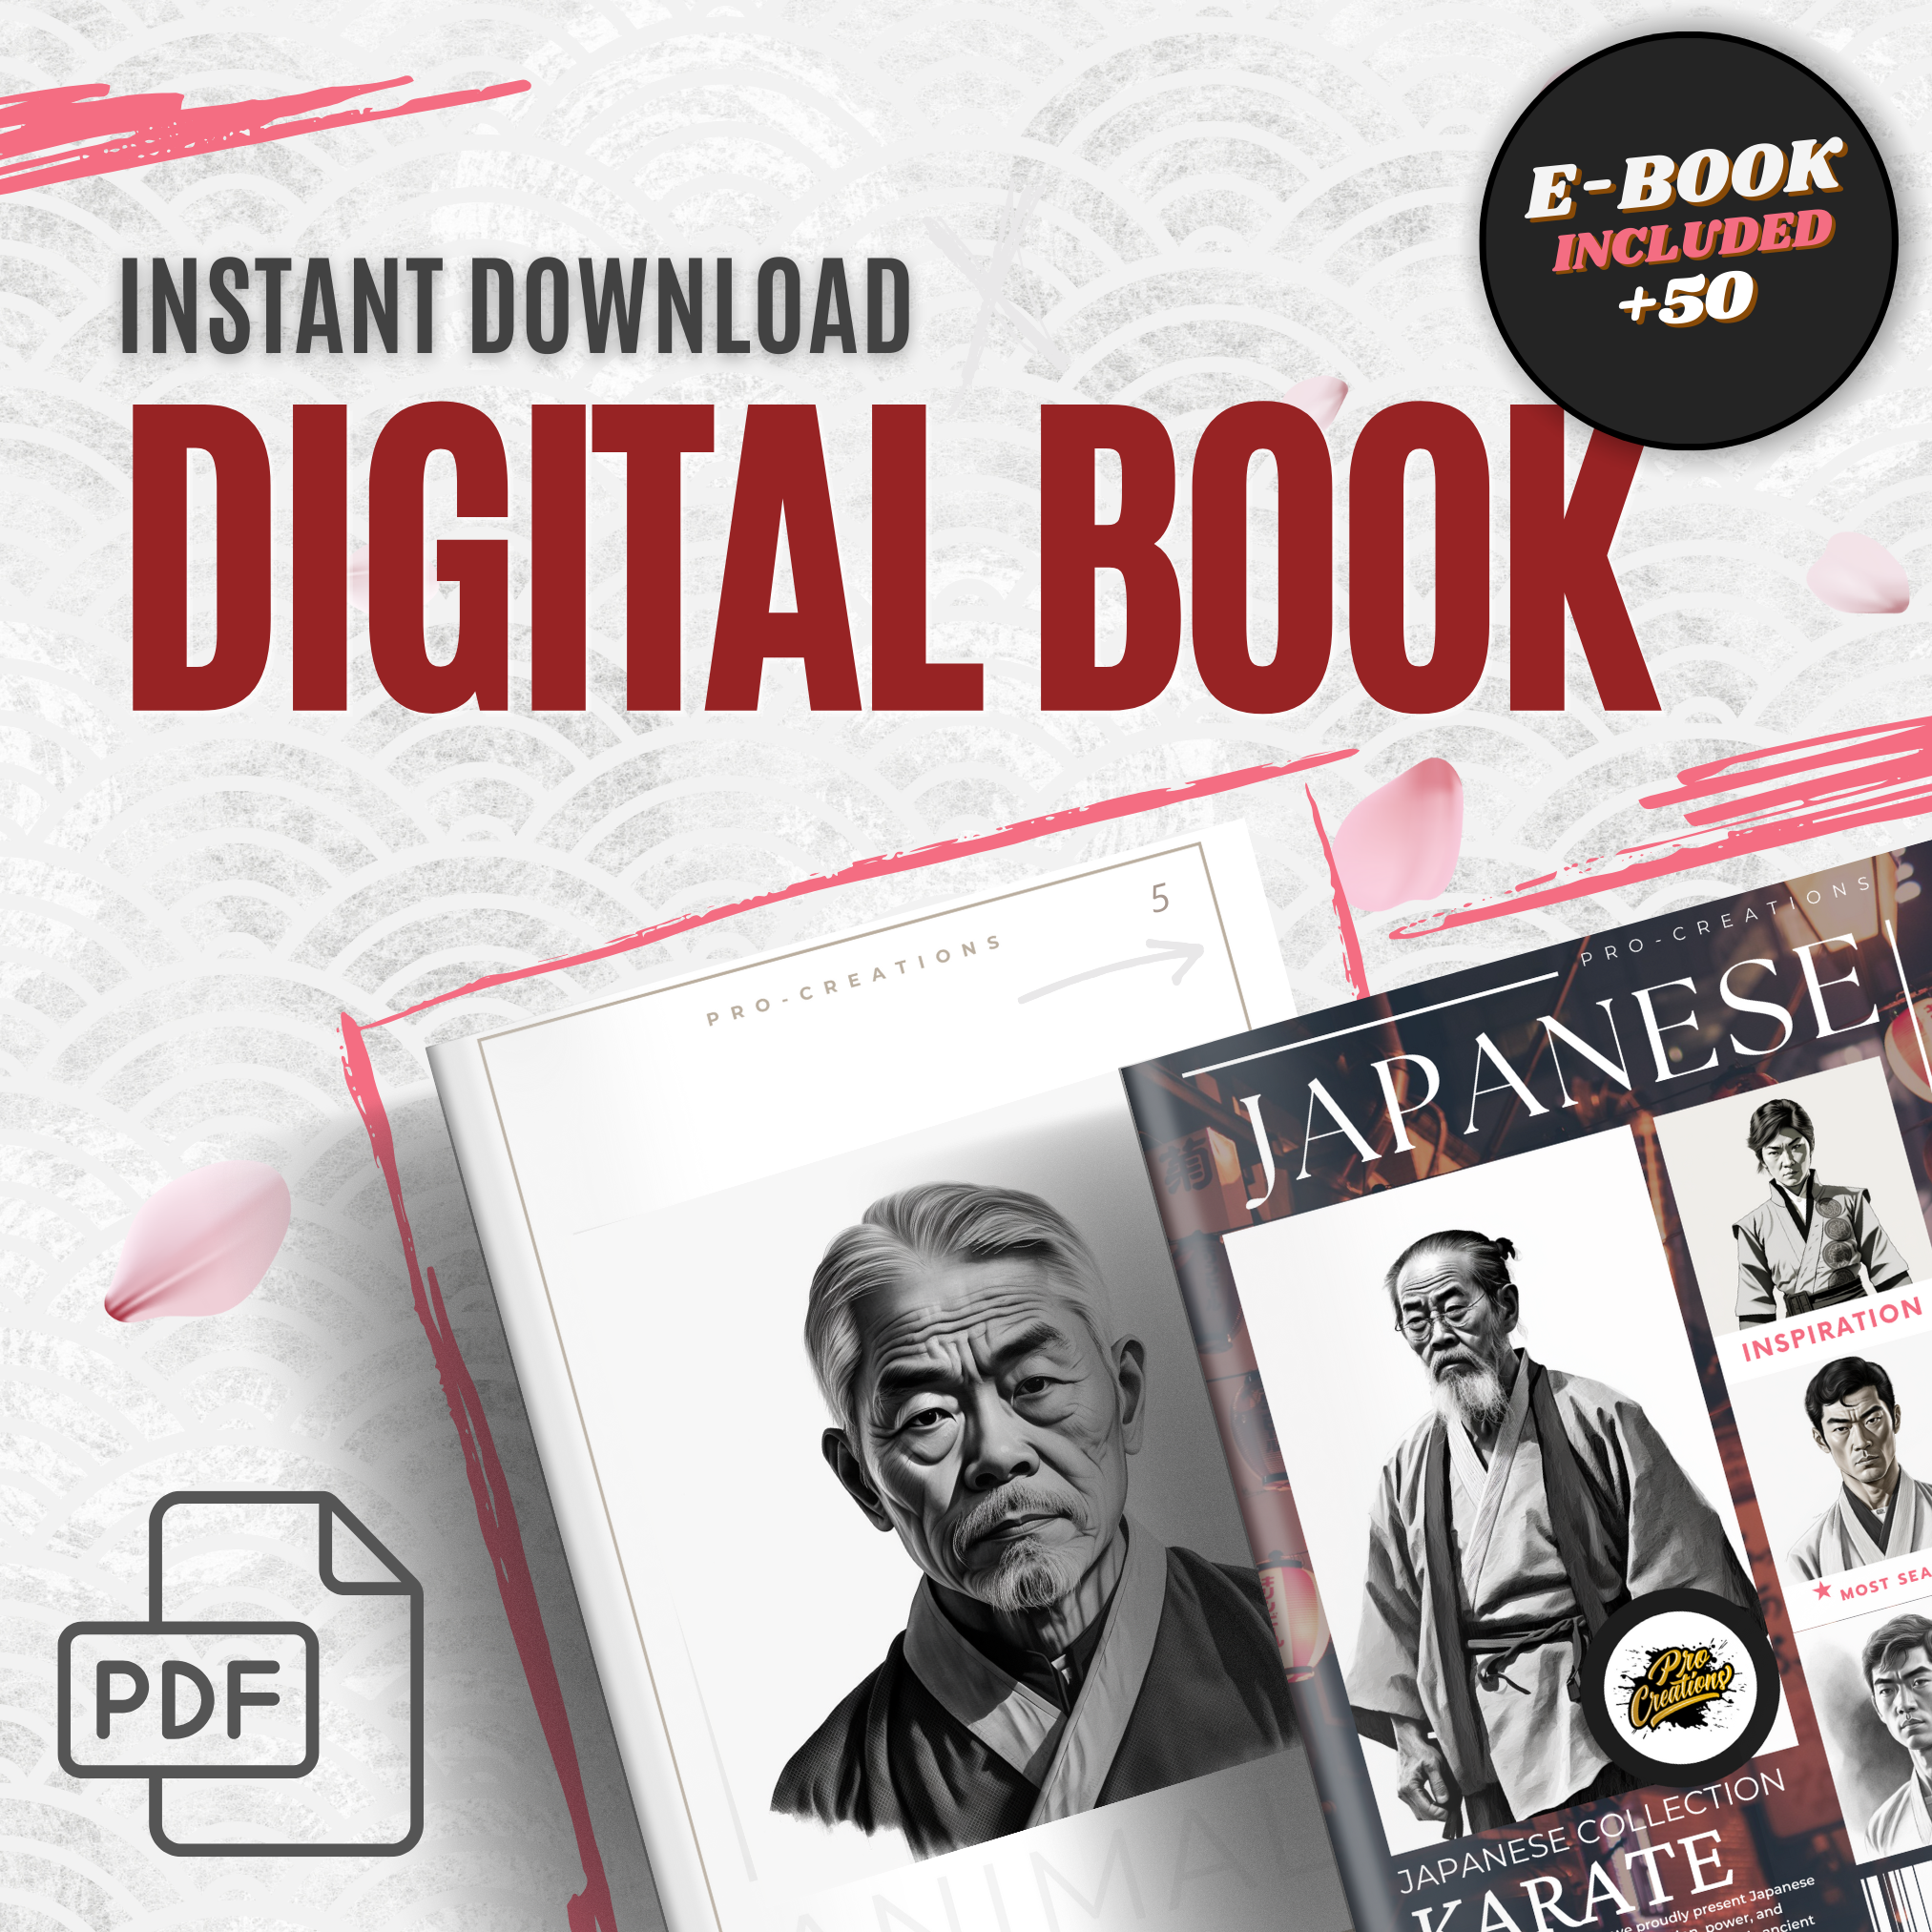 Japanese Karate Digital Reference Design Collection: 50 Procreate & Sketchbook Images